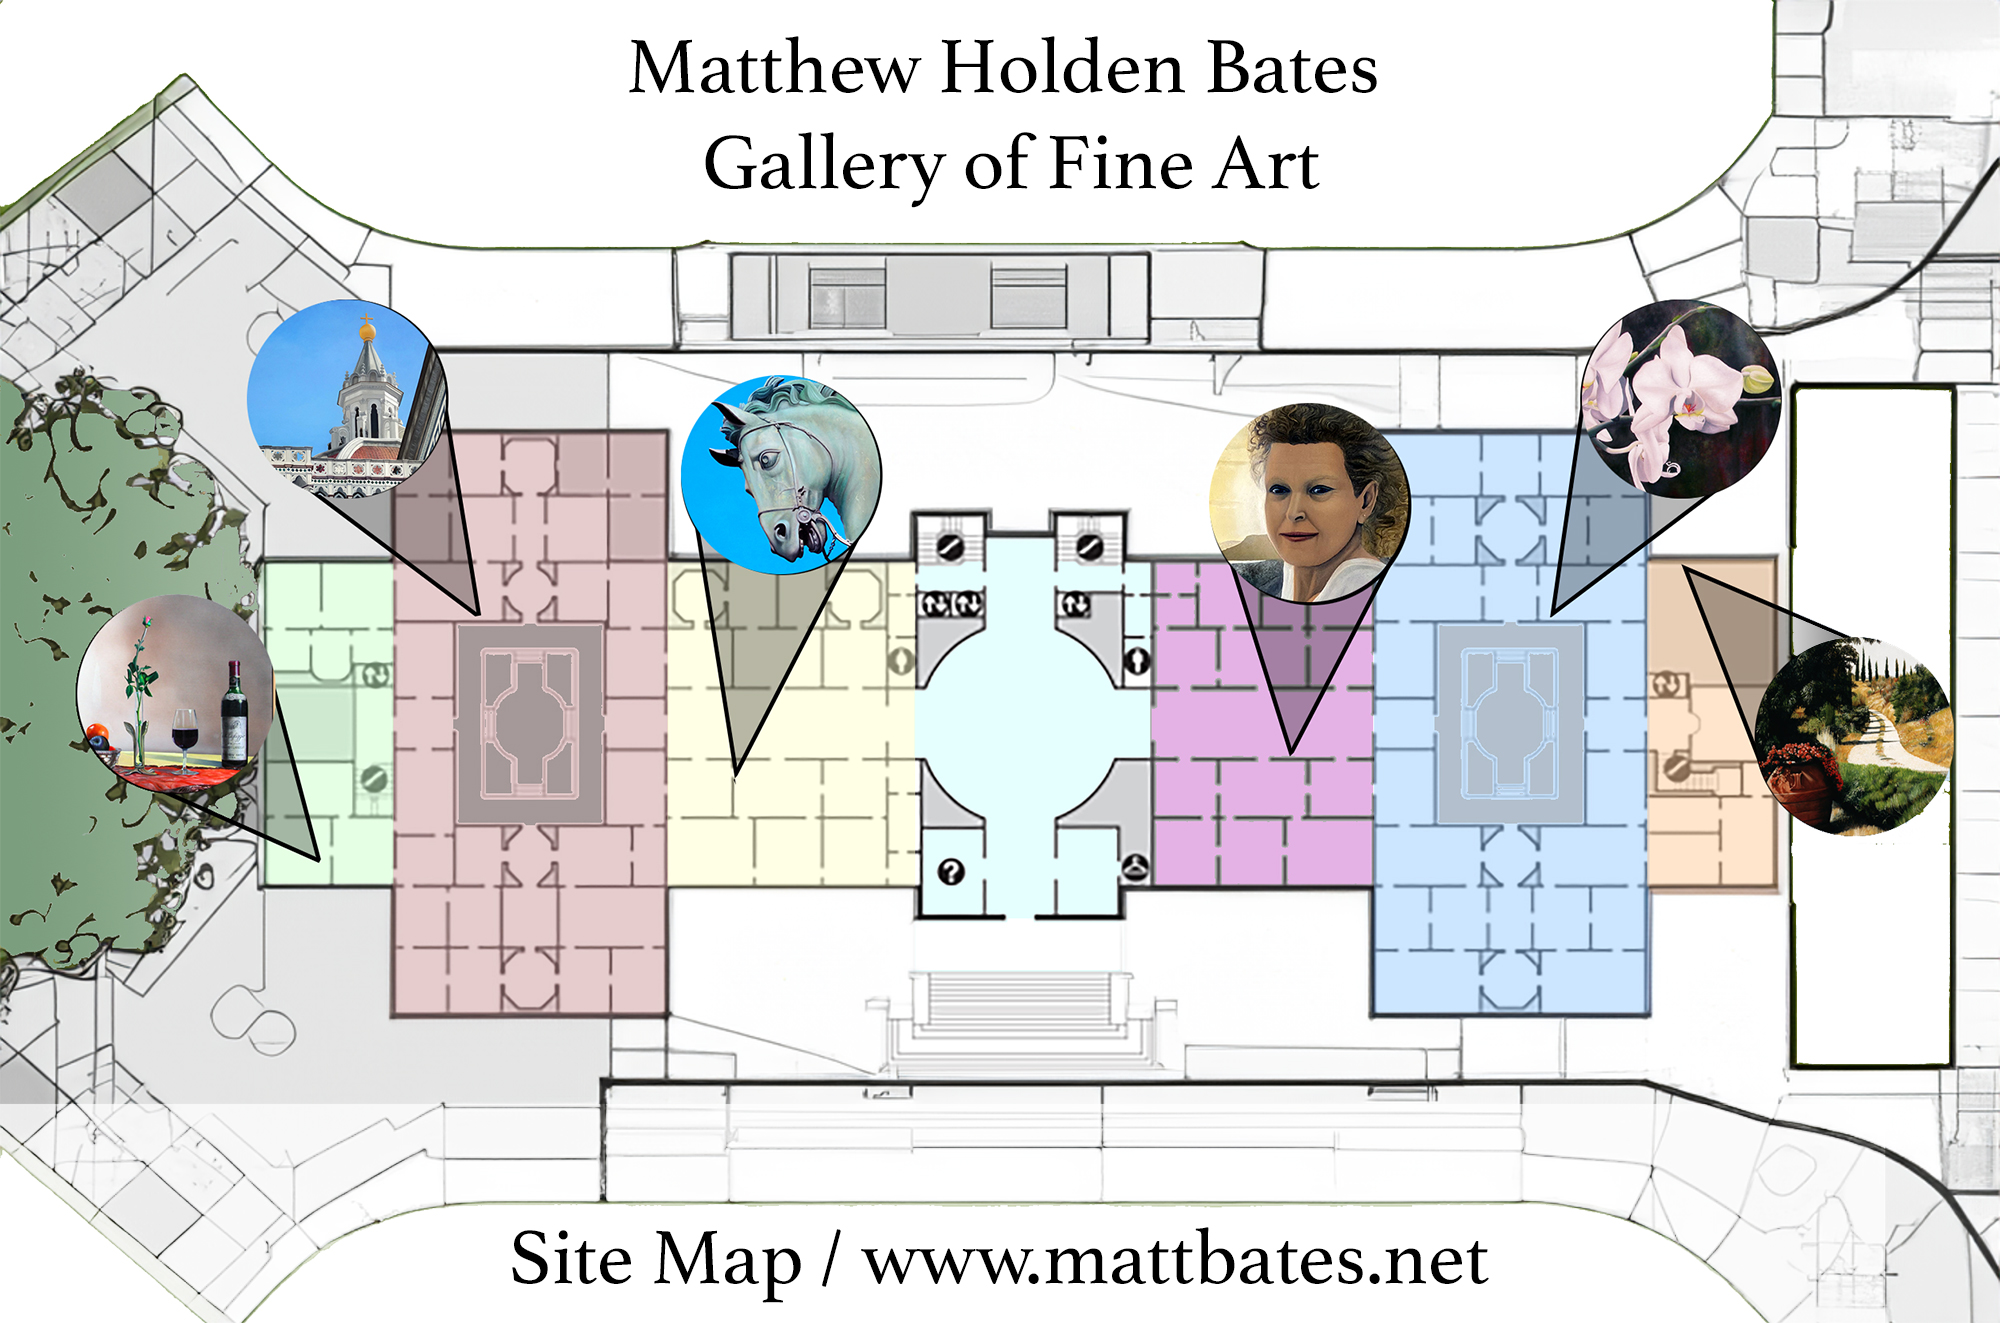 Matthew Holden Bates Gallery floor plan